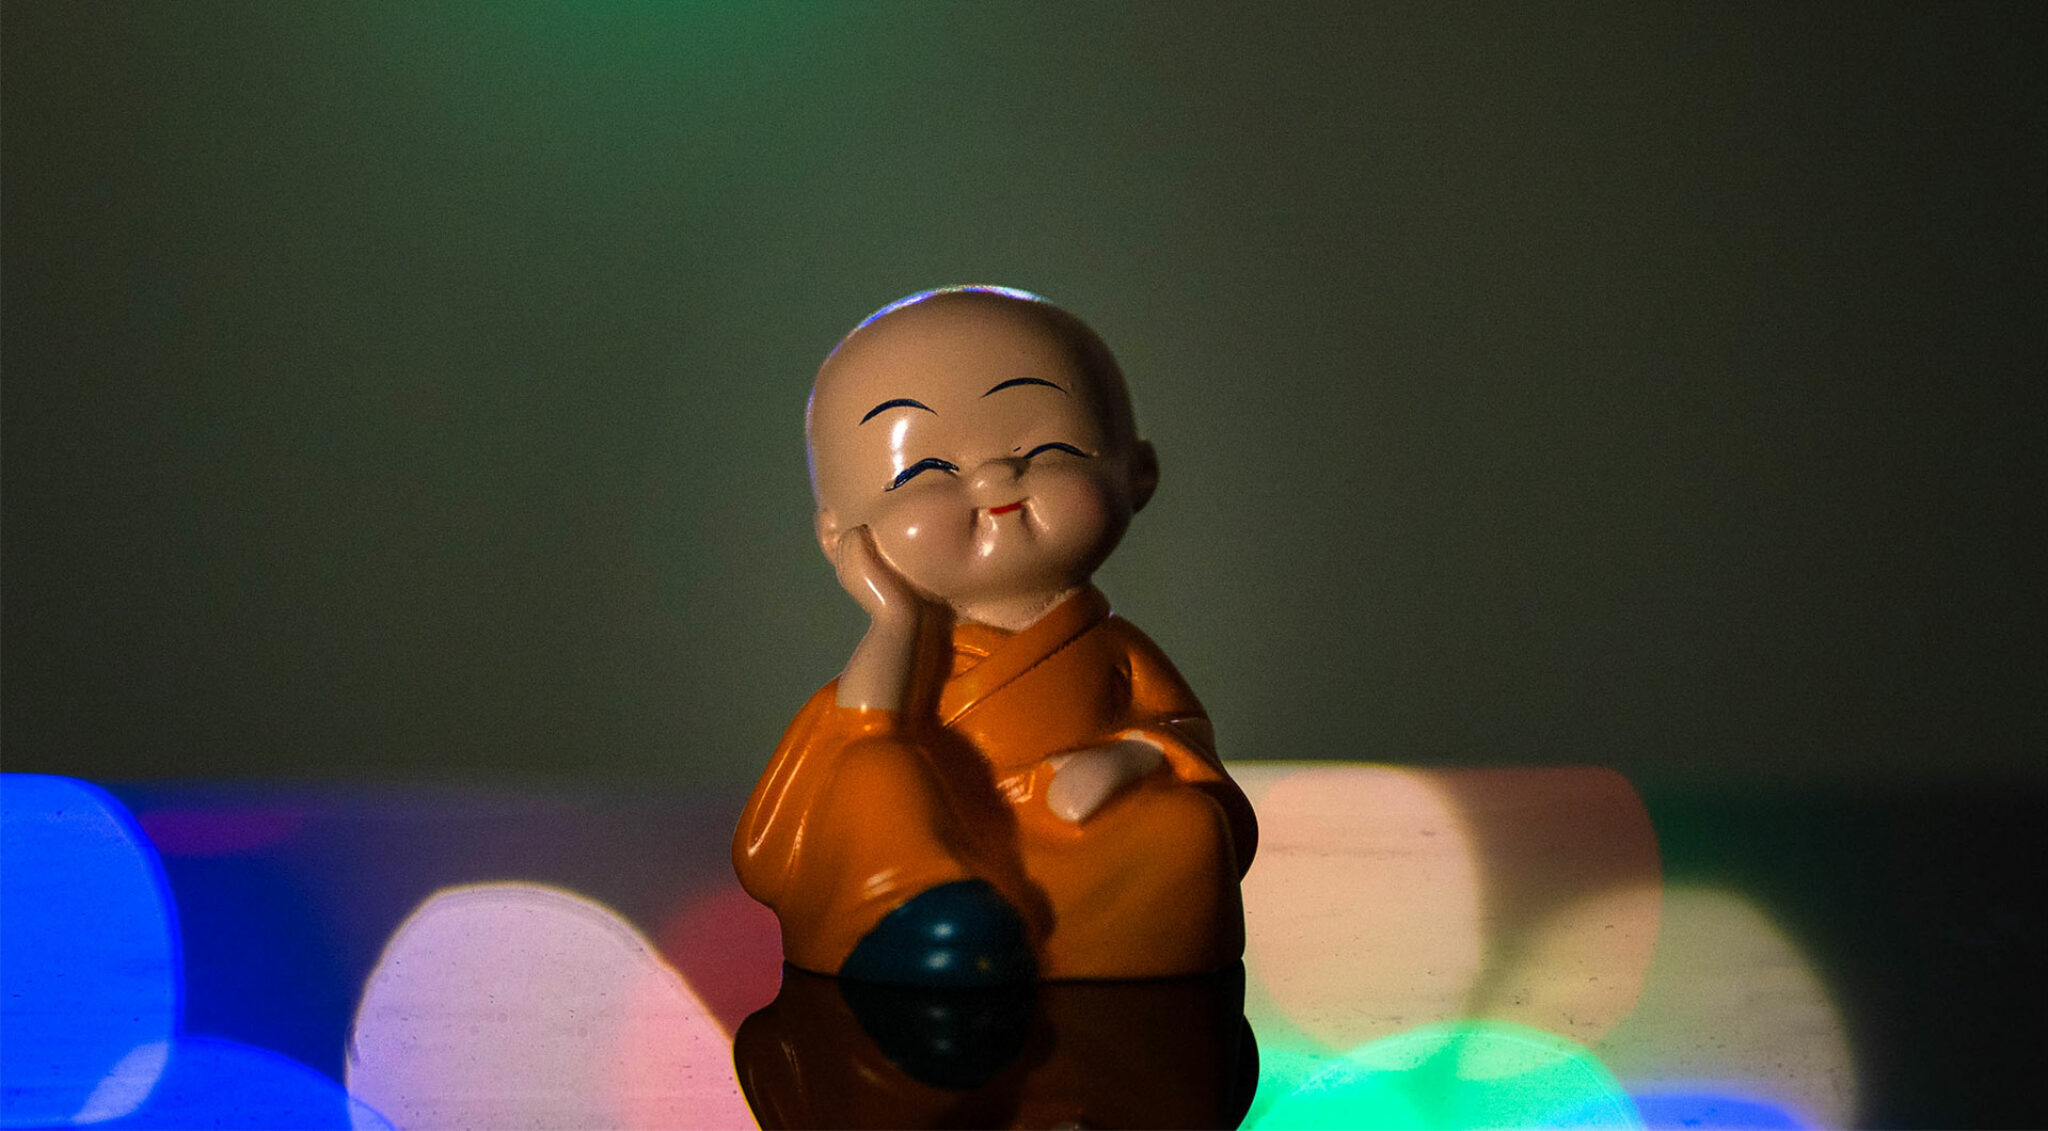 Zufrieden wirkende Figur eines asiatischen Mönches.